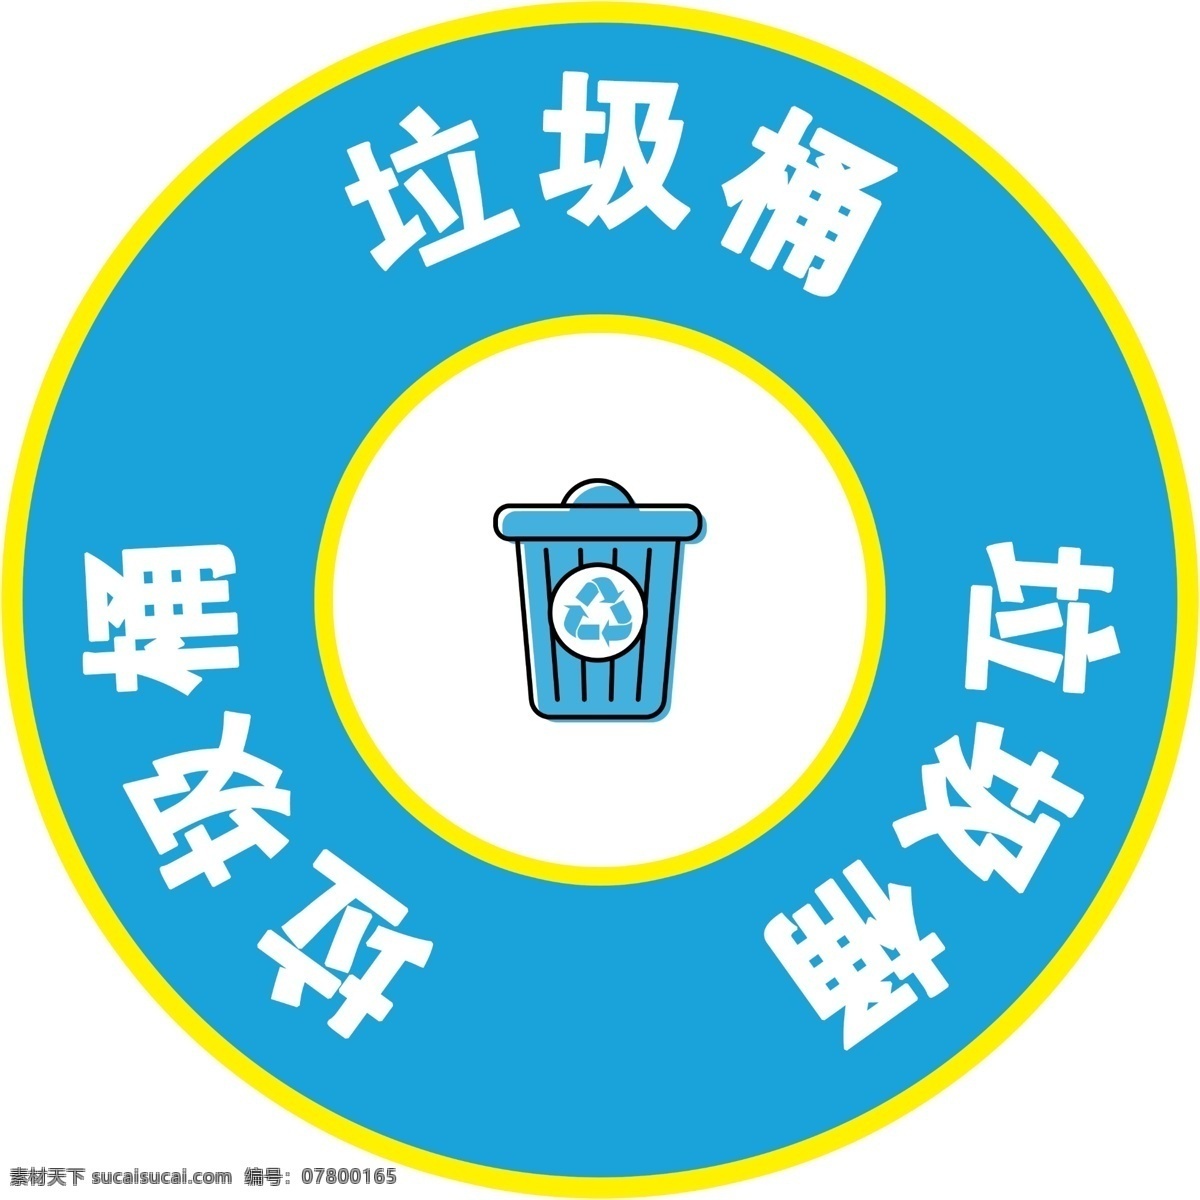 垃圾桶标识贴 垃圾桶 标识贴 垃圾桶形状 图标 颜色 标志图标 公共标识标志